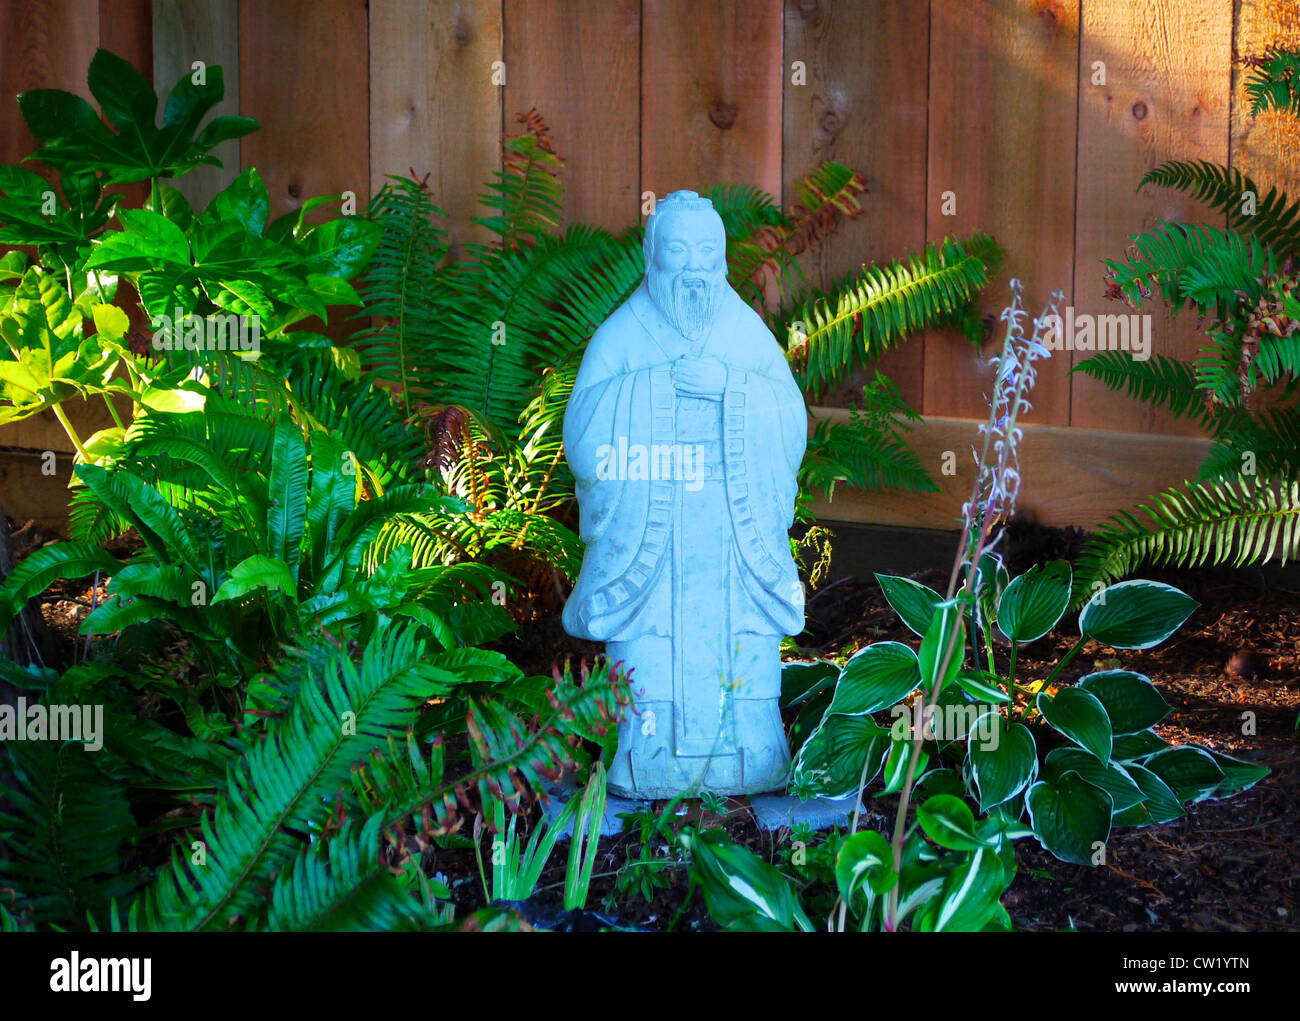 Confucius statue in sunlit garden Stock Photo